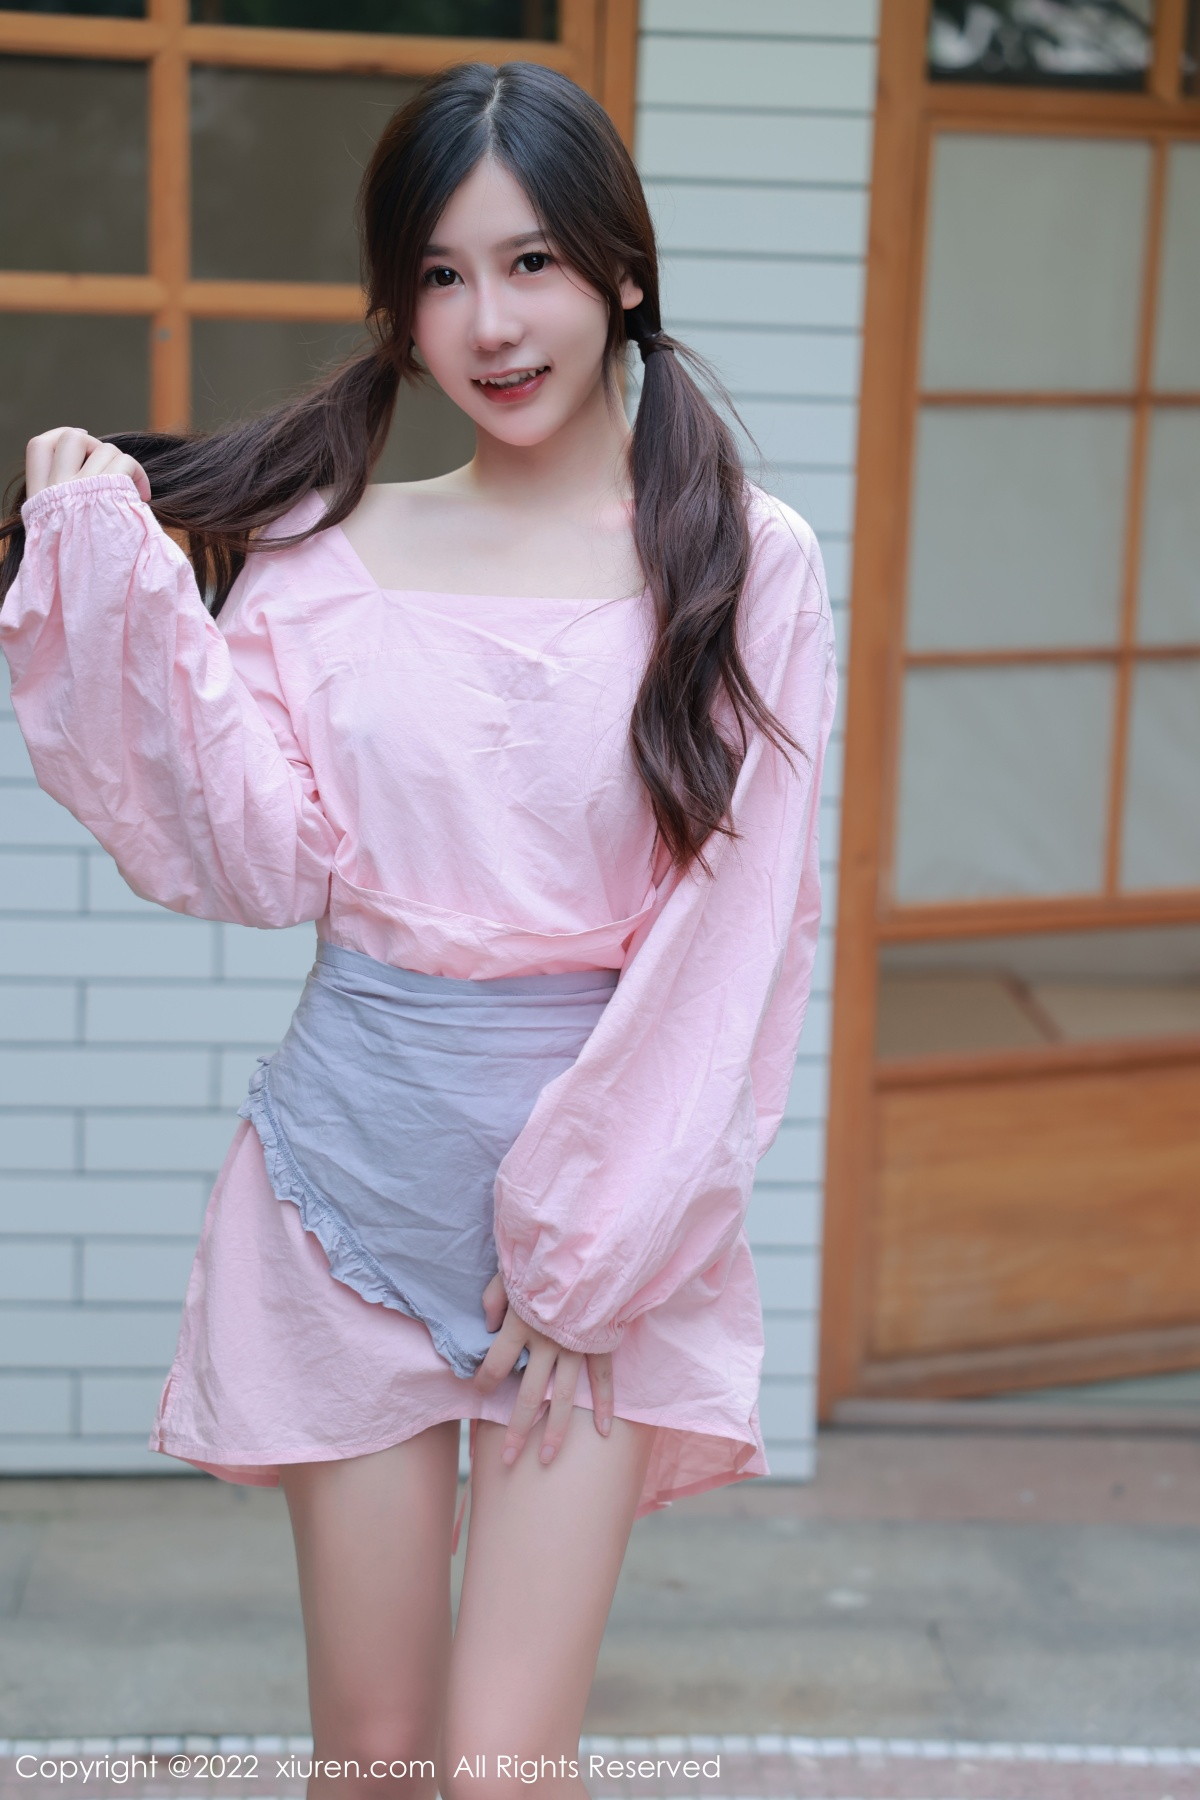 模特尹甜甜豆腐店拍摄粉色服饰秀完美身材露性感美腿迷人写真